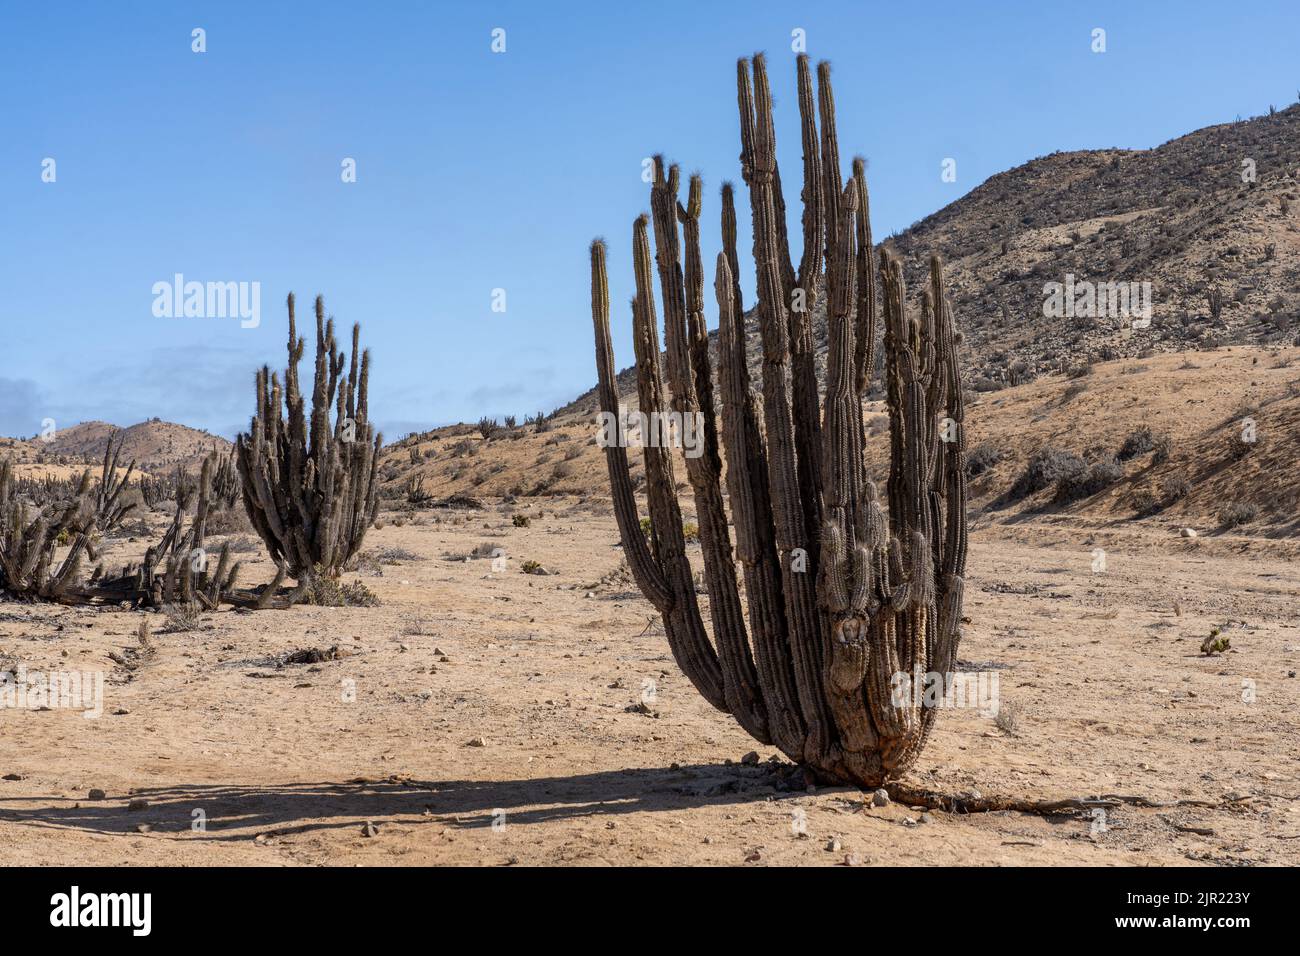 Eulychnia iquiquensis candelabra cacti in Pan de Azucar National Park in the Atacama Desert of Chile. Stock Photo